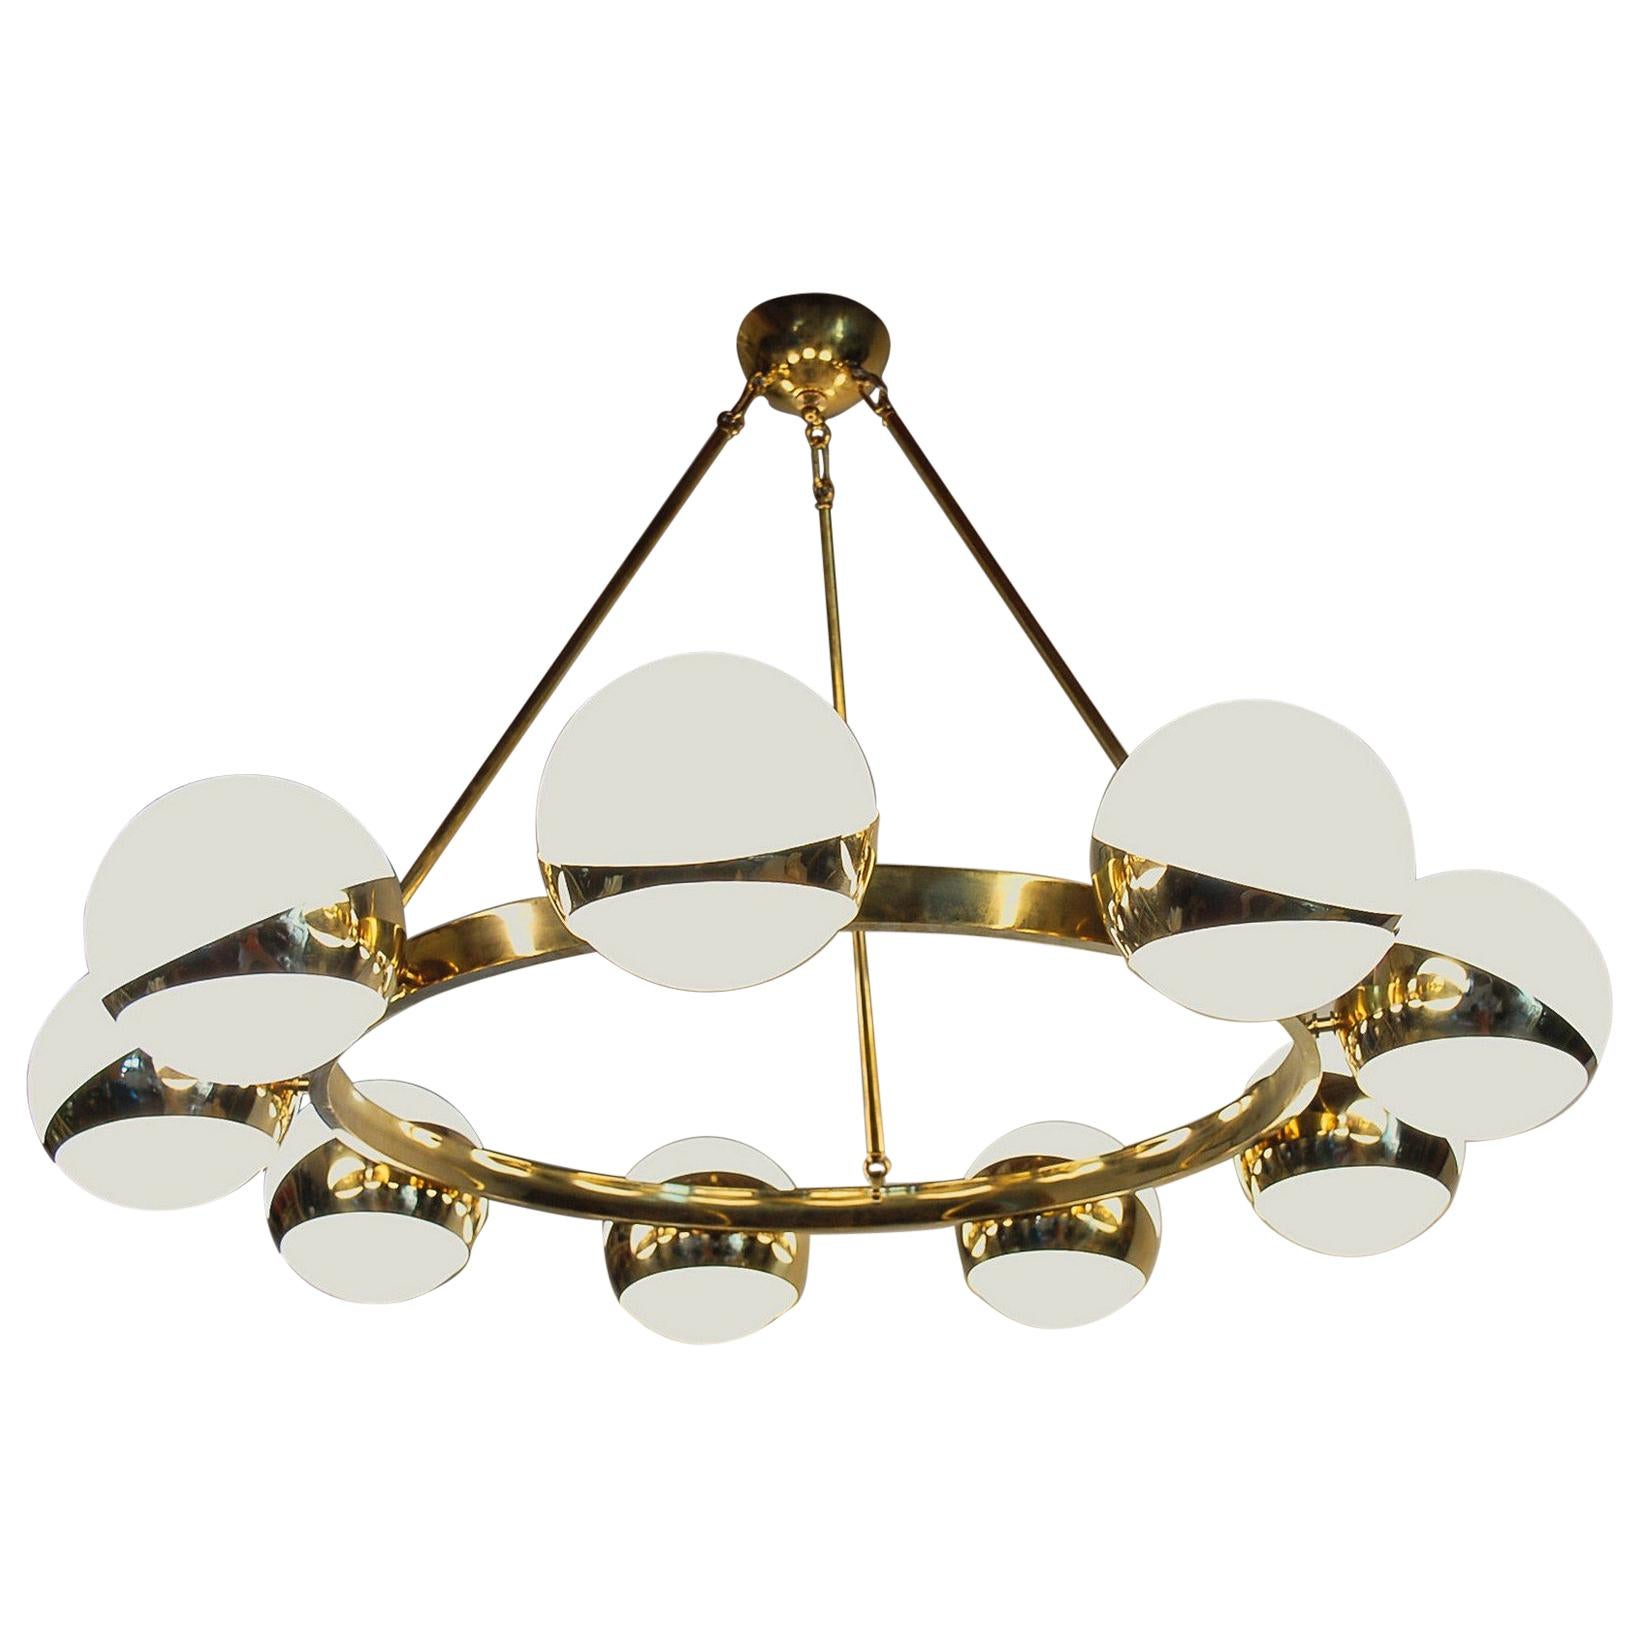 Brass and lattimo glass chandelier, 9 spheres Stilnovo Designed for light output